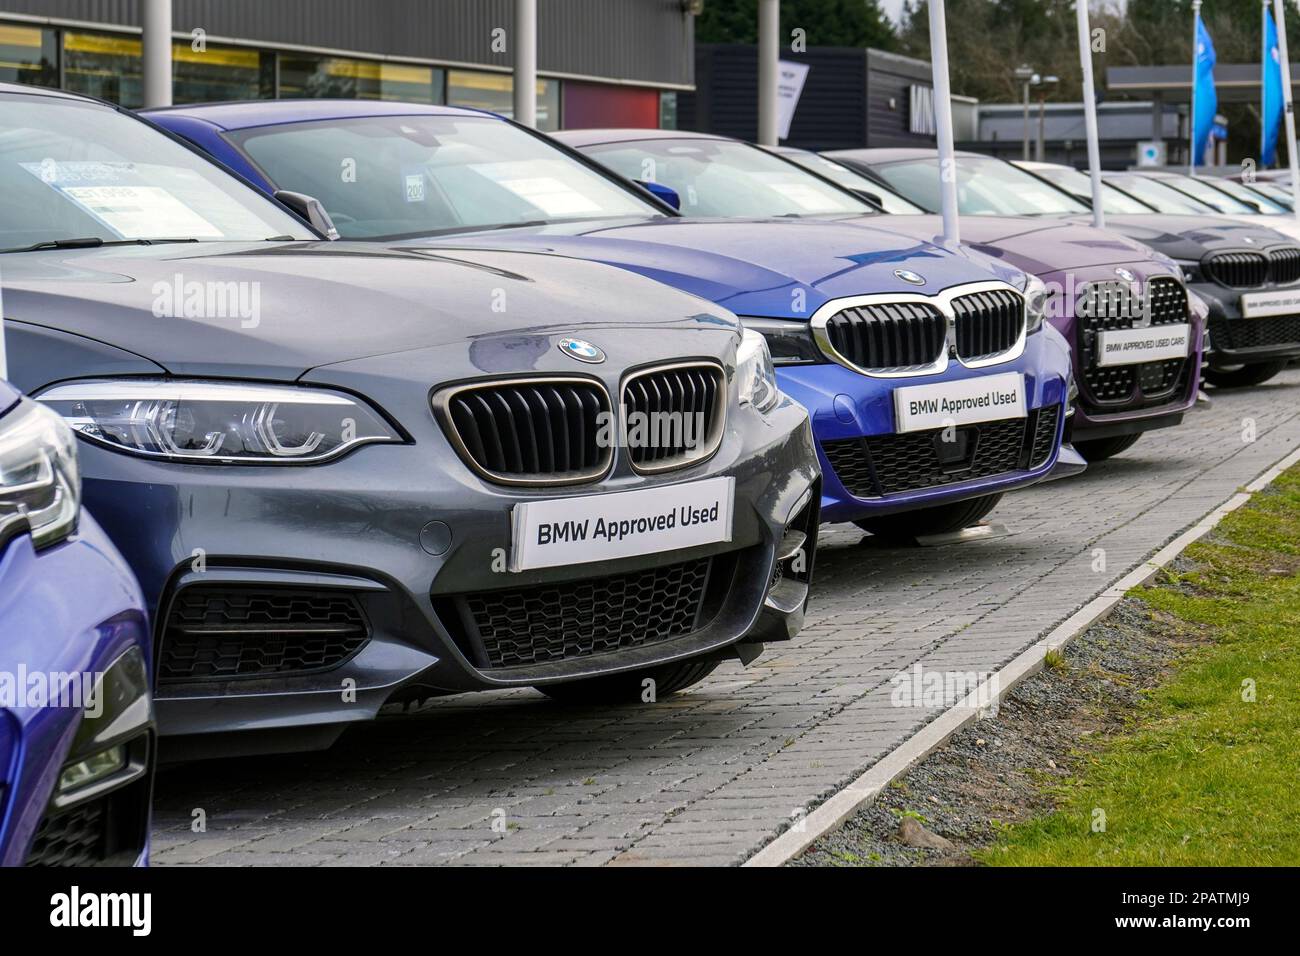 Sélection de voitures BMW secondaires à vendre sur une piste de garage, Royaume-Uni Banque D'Images